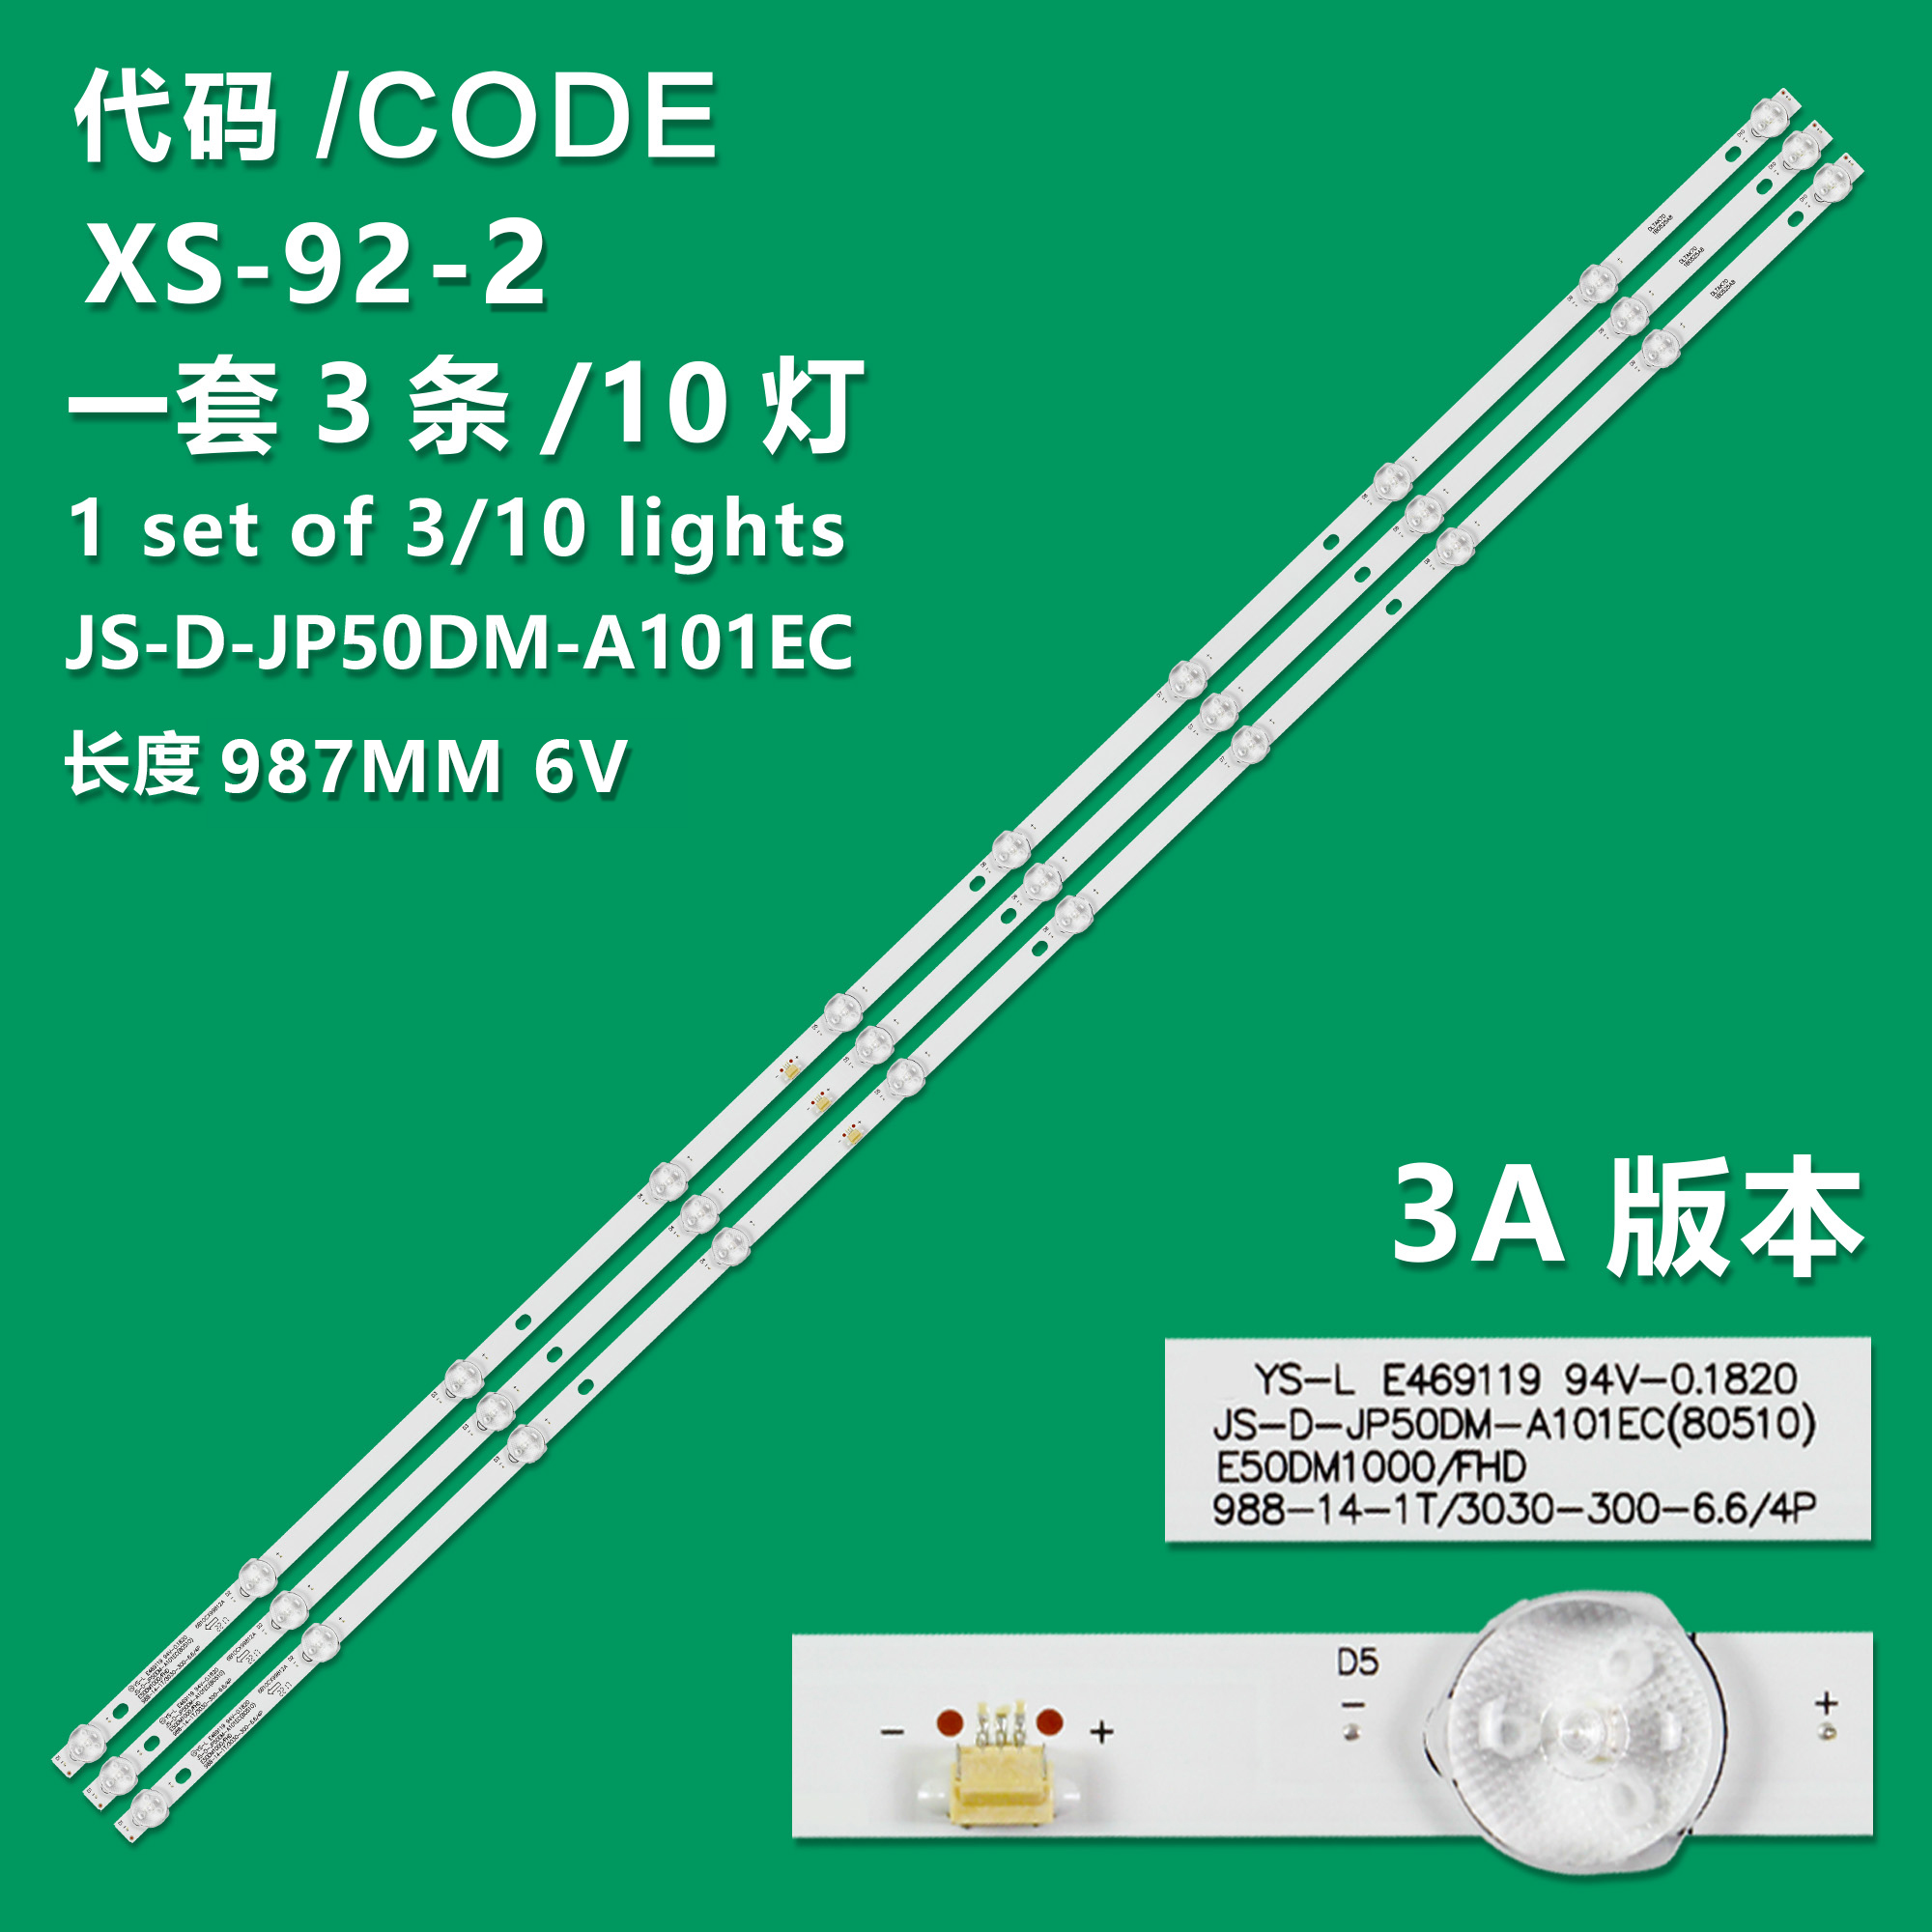 XS-92-2 New LCD TV Backlight Strip JS-D-JP50DM-A101EC (80510)E50DM1000/FHD For Leroy E50DM1000/FHD